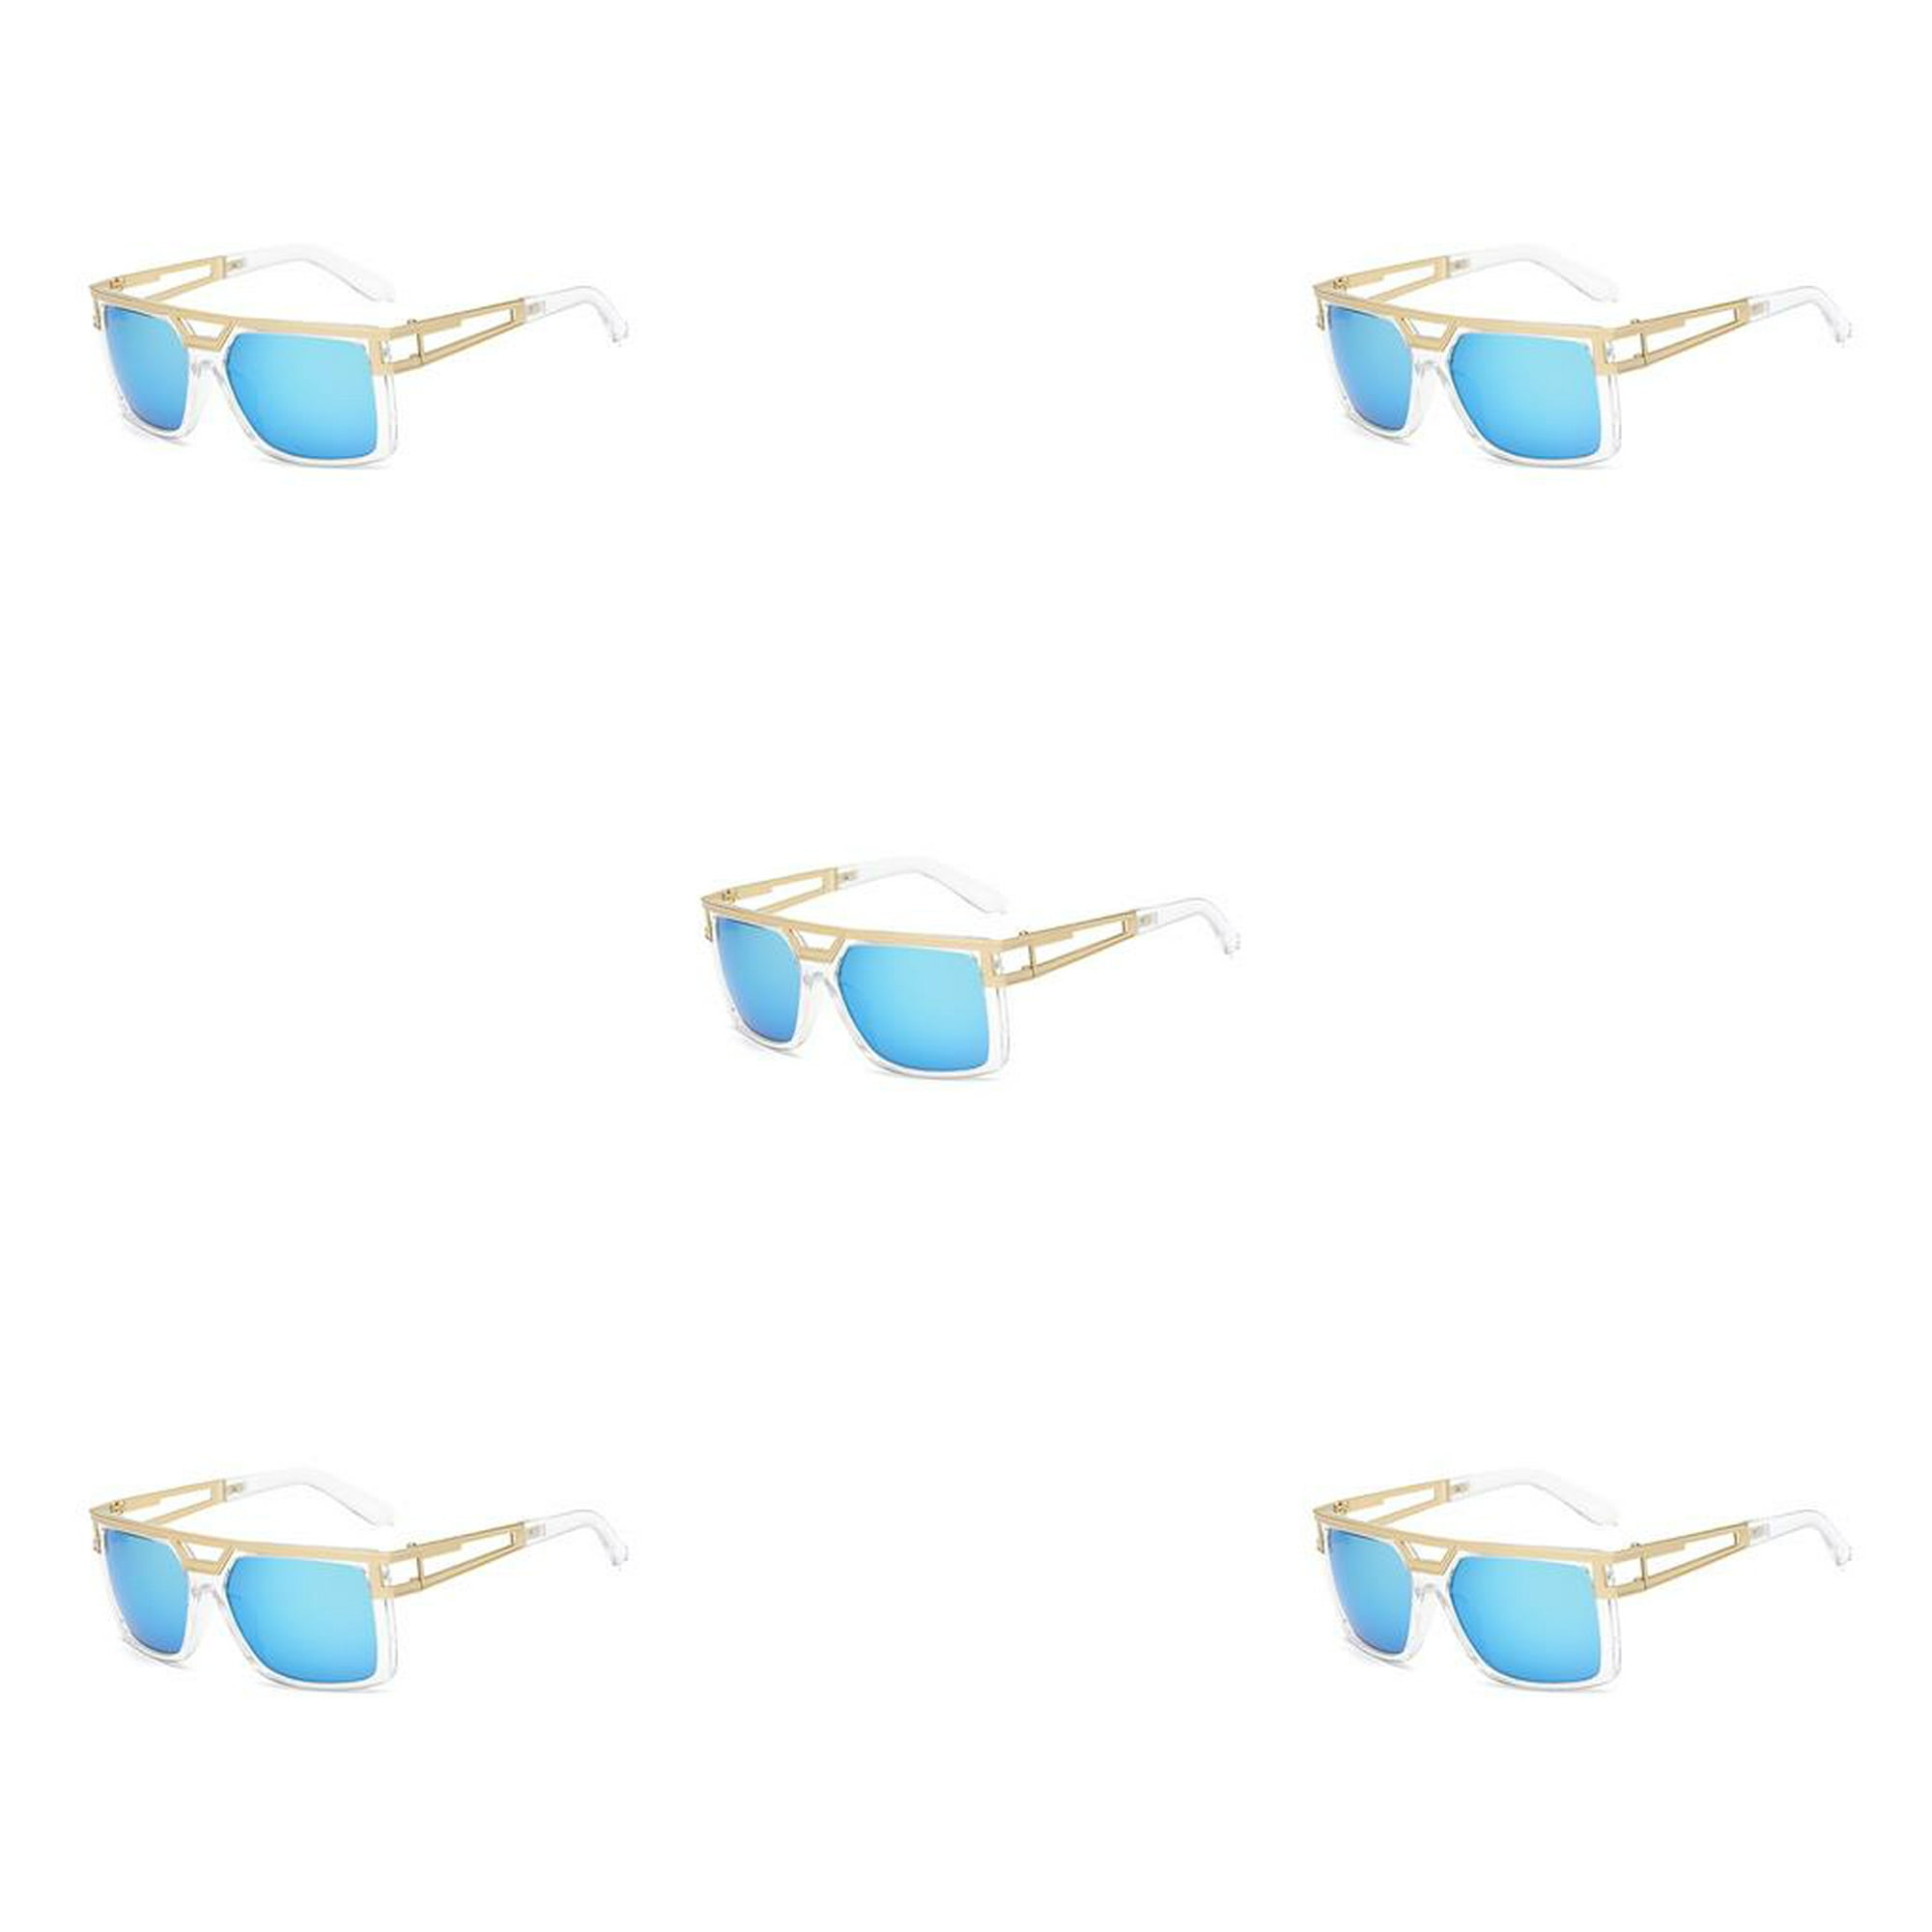 Minnieouse Gafas de sol Marco cuadrado Gafas Visión clara Ojos Suministros  Gafas cómodas Equipo al aire libre Gafas para conducir Lentes Plata blanca